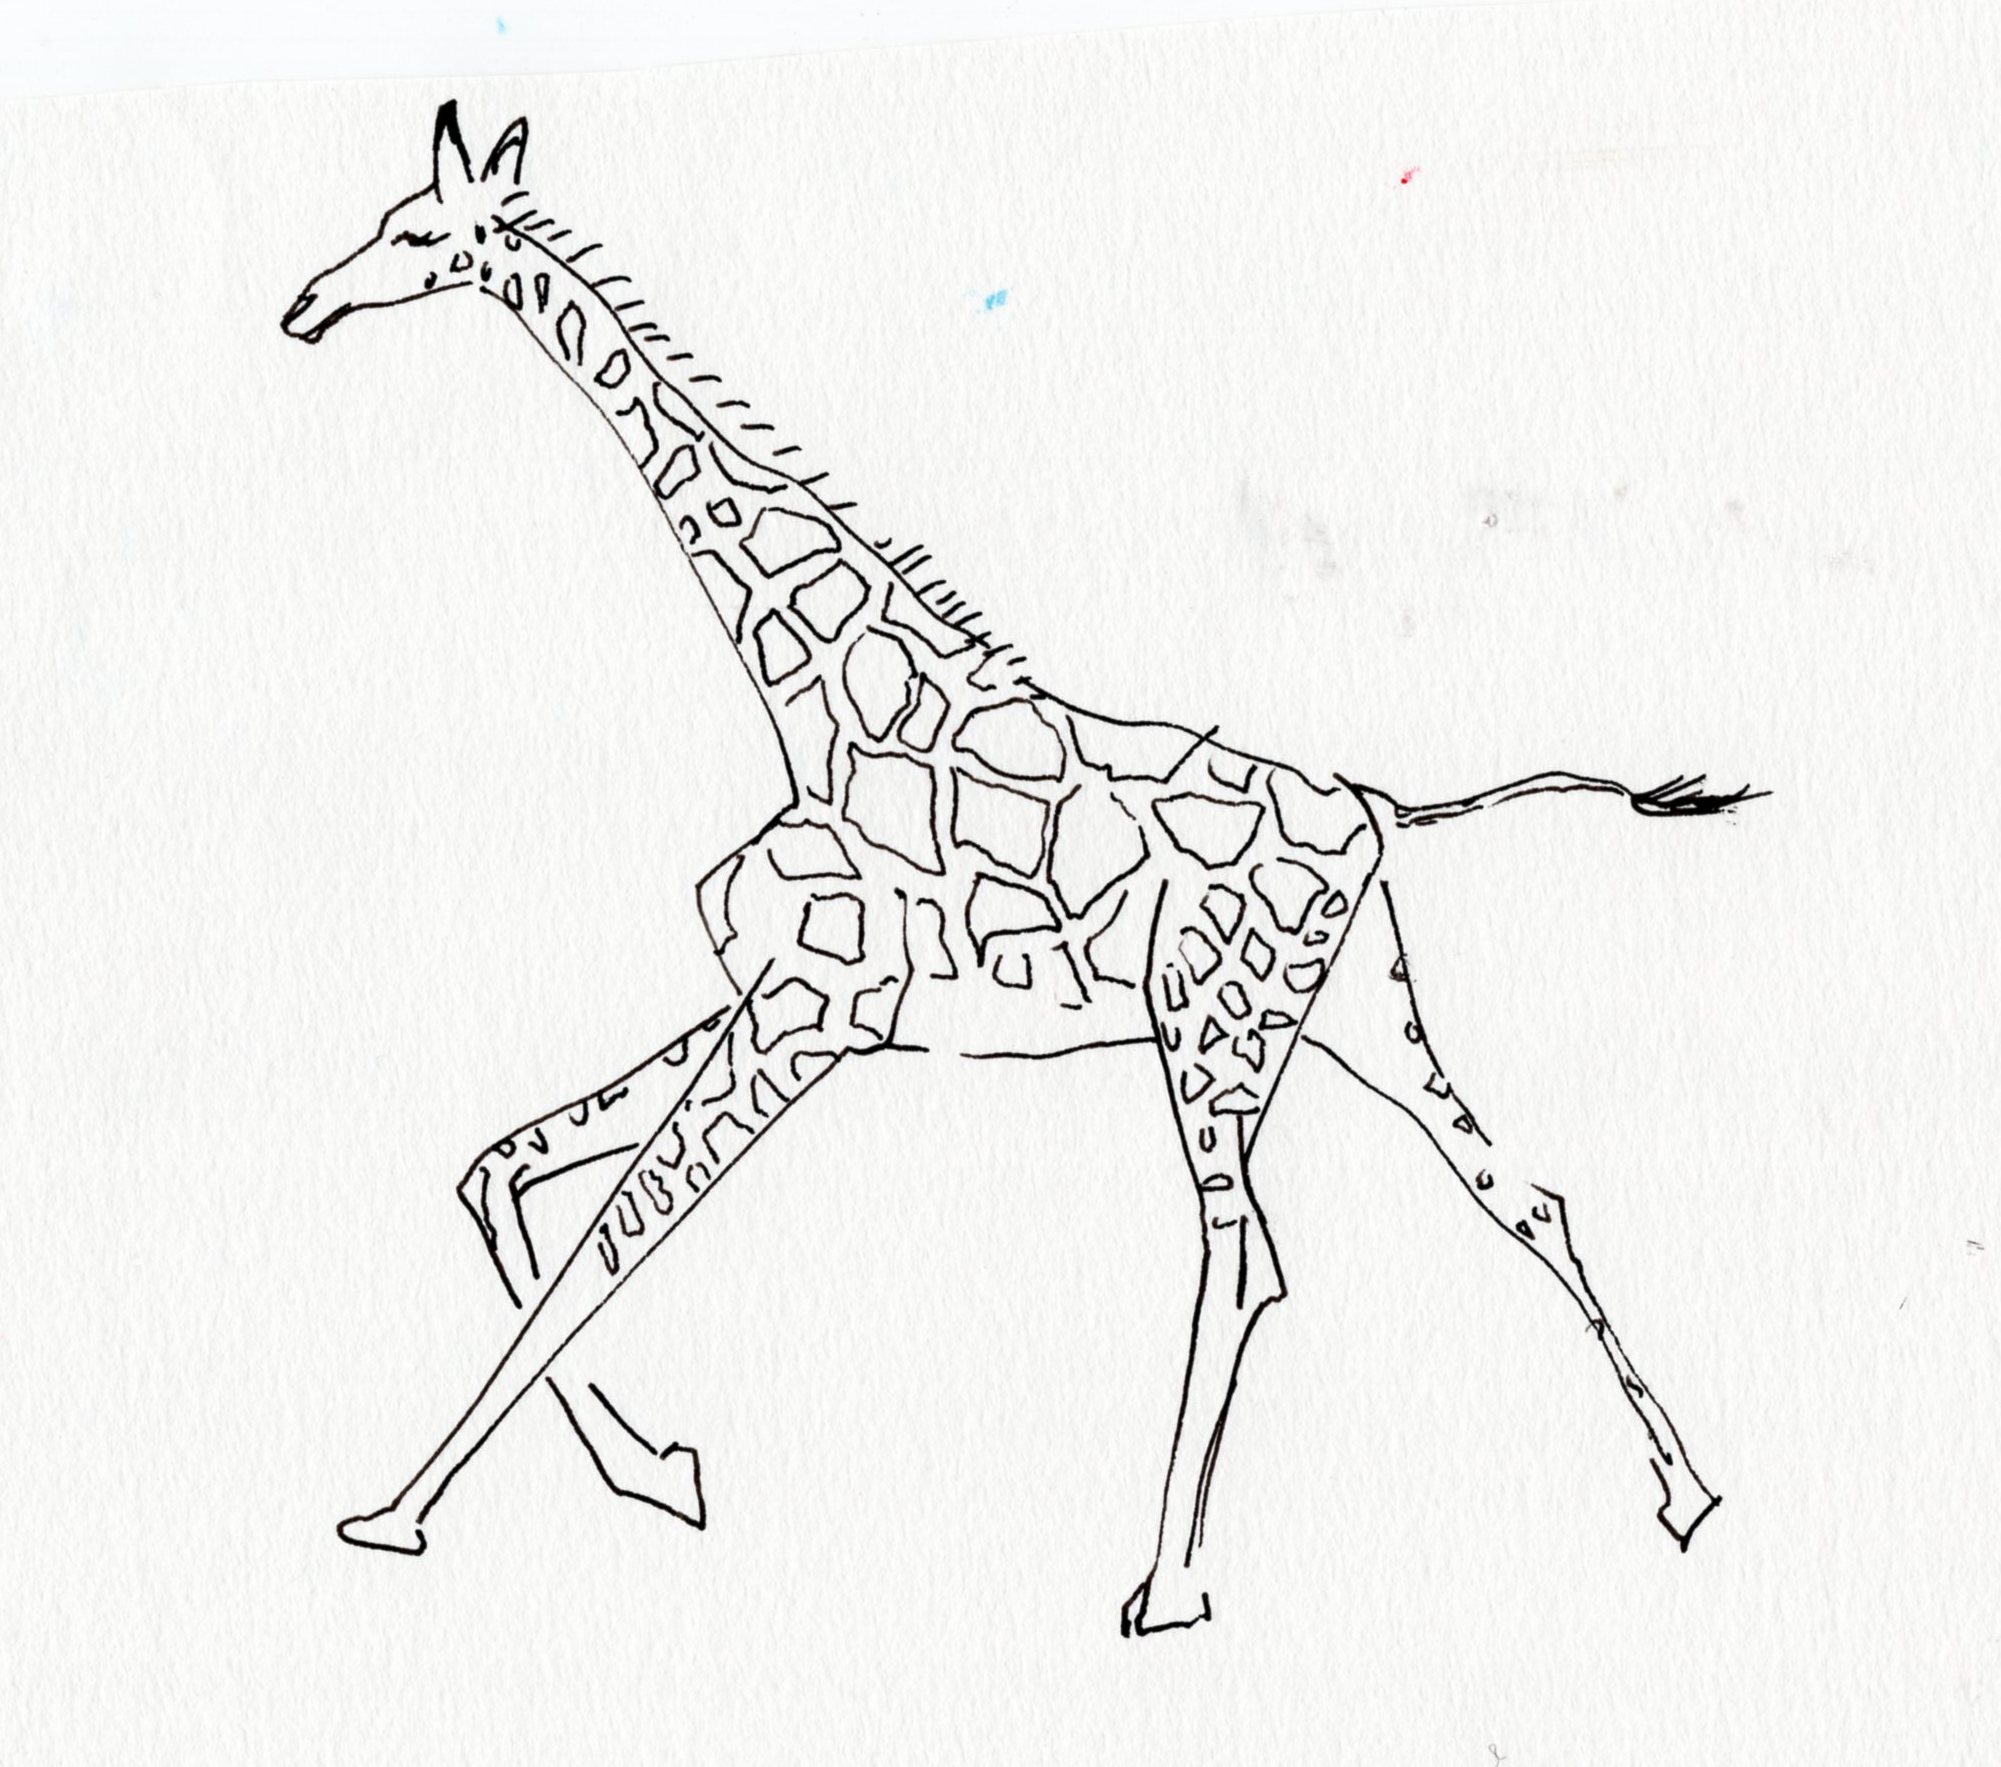 giraffe_running006.jpg